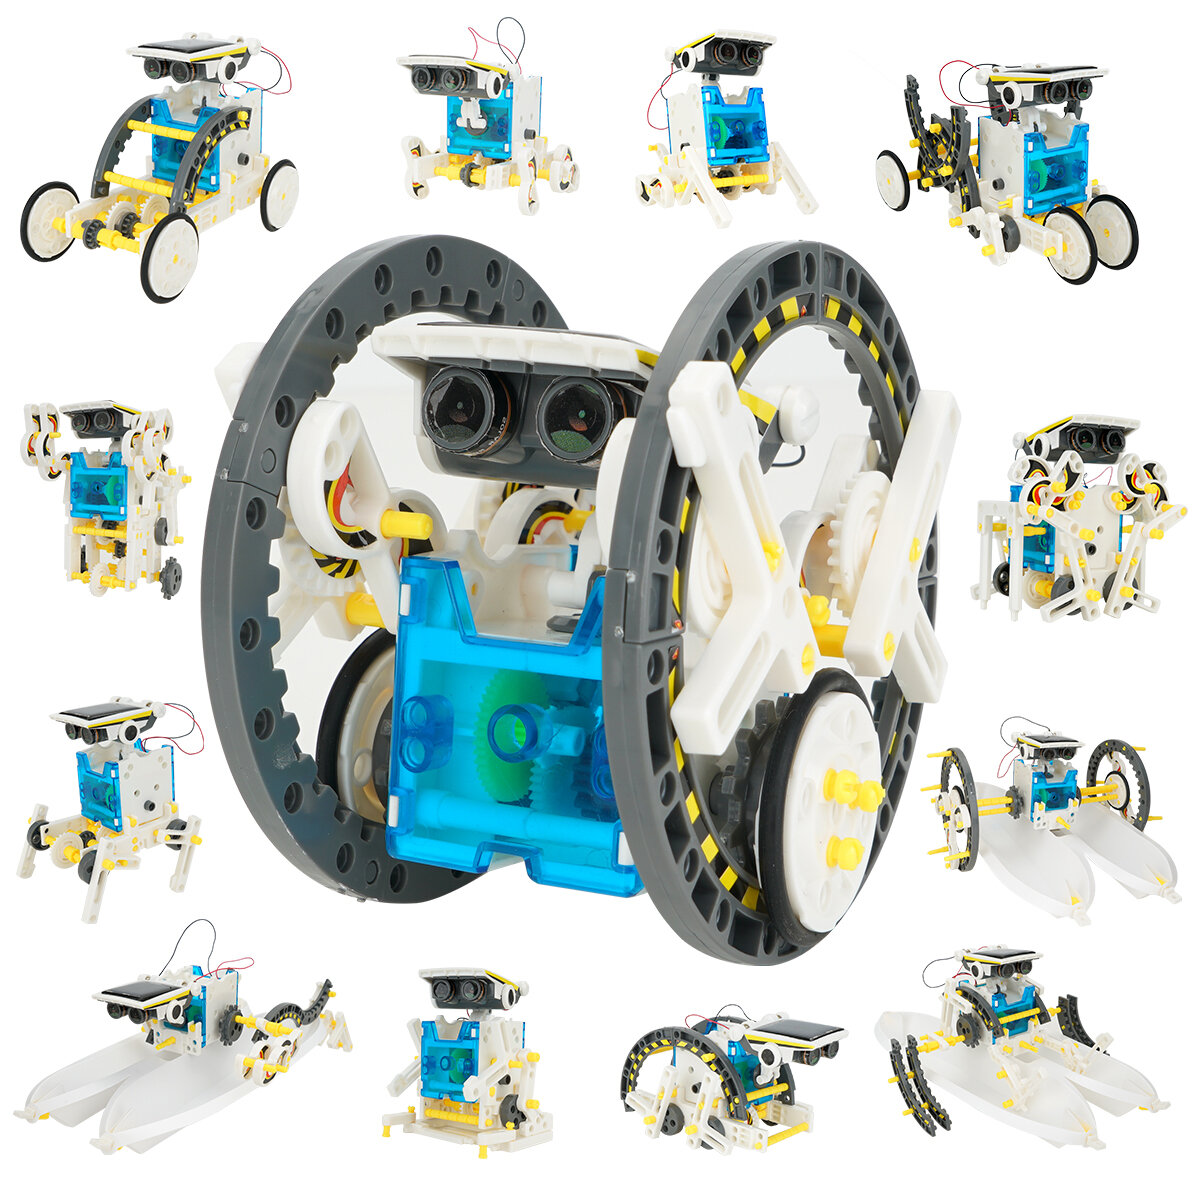 13 in 1 Solar Robot STEM Toys Robot Kit voor Educatief Wetenschap Speelgoed Leren Wetenschapsexperimenten Model Kits: